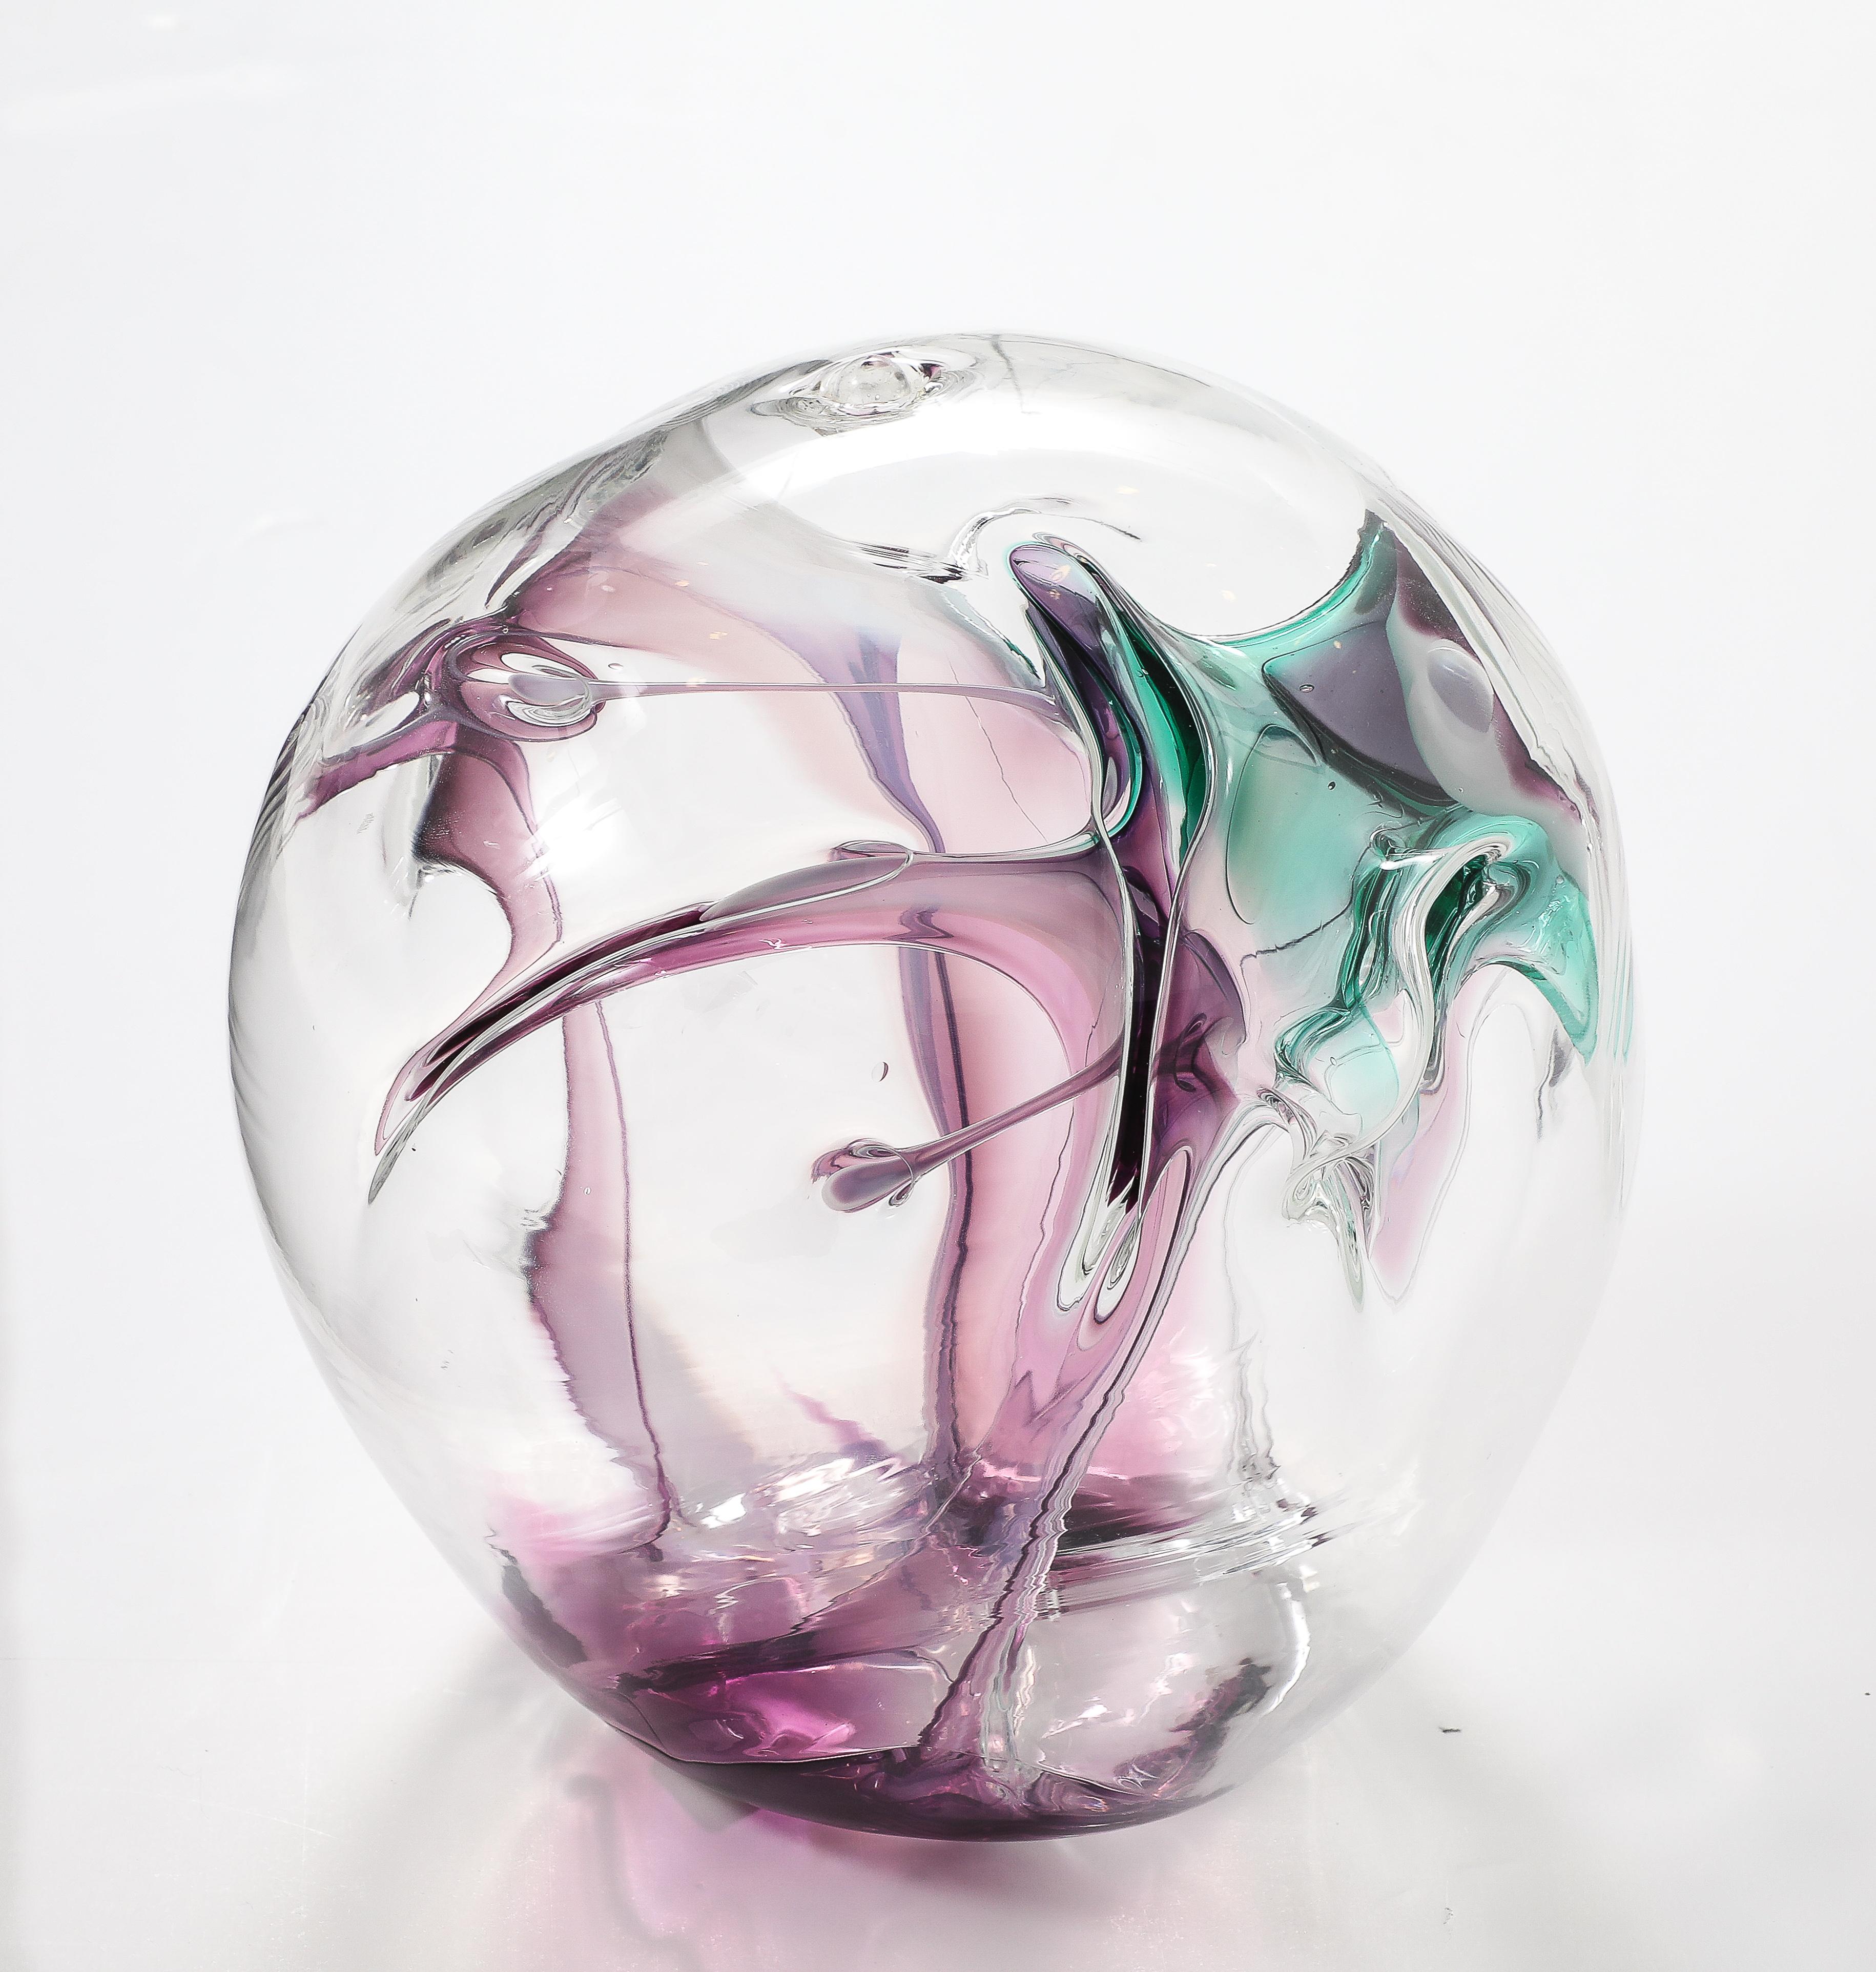 Wunderschöne mundgeblasene Orb-Skulptur aus Glas, signiert und datiert von PETER BRAMHALL 1998.
Der Orb hat innen Glasfäden in schönen Magenta- und Grüntönen.
Bitte sehen Sie sich auch unsere anderen Bramhall's an, um eine beeindruckende Collection